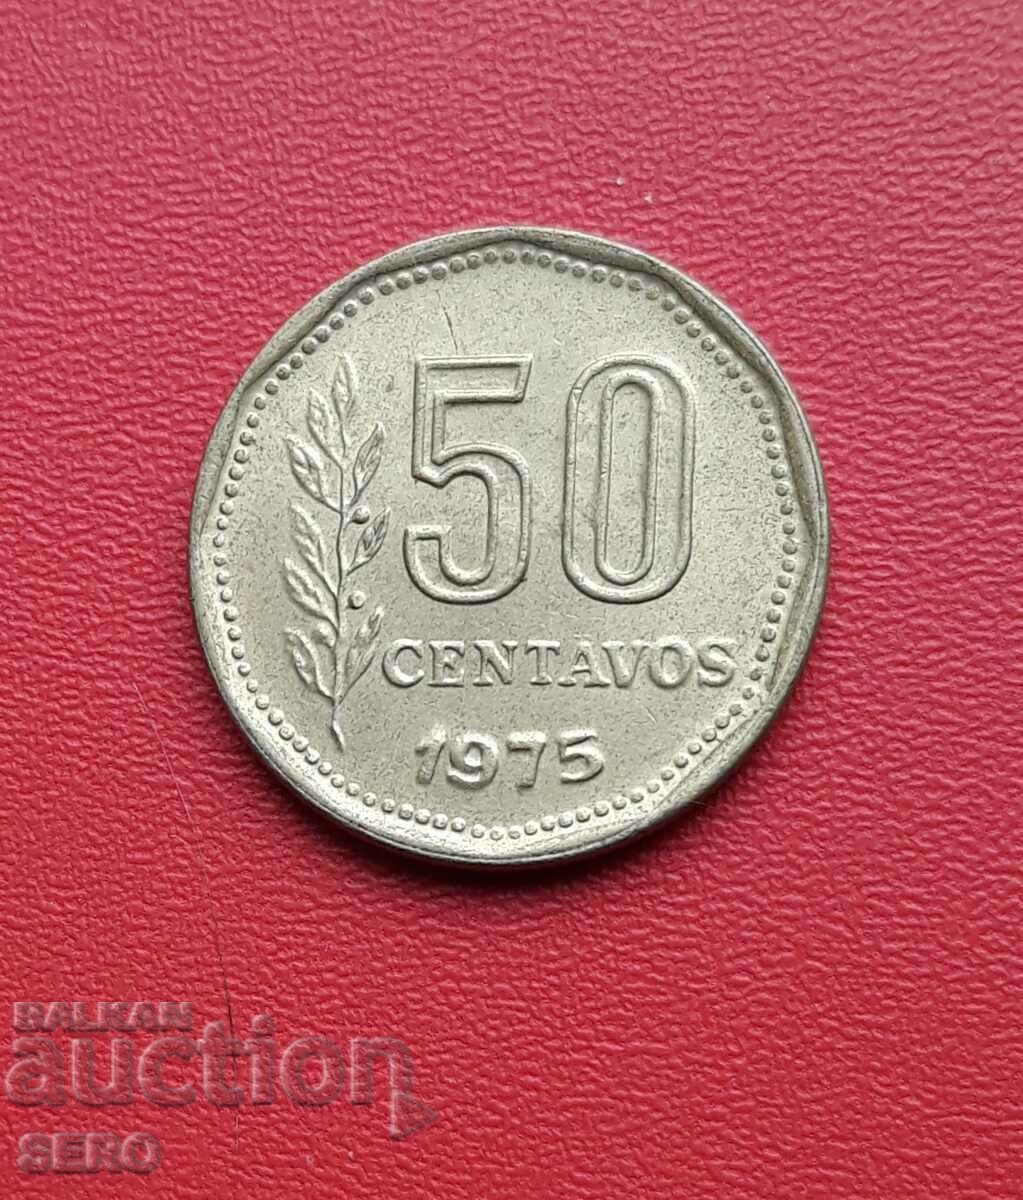 Argentina-50 centavos 1975